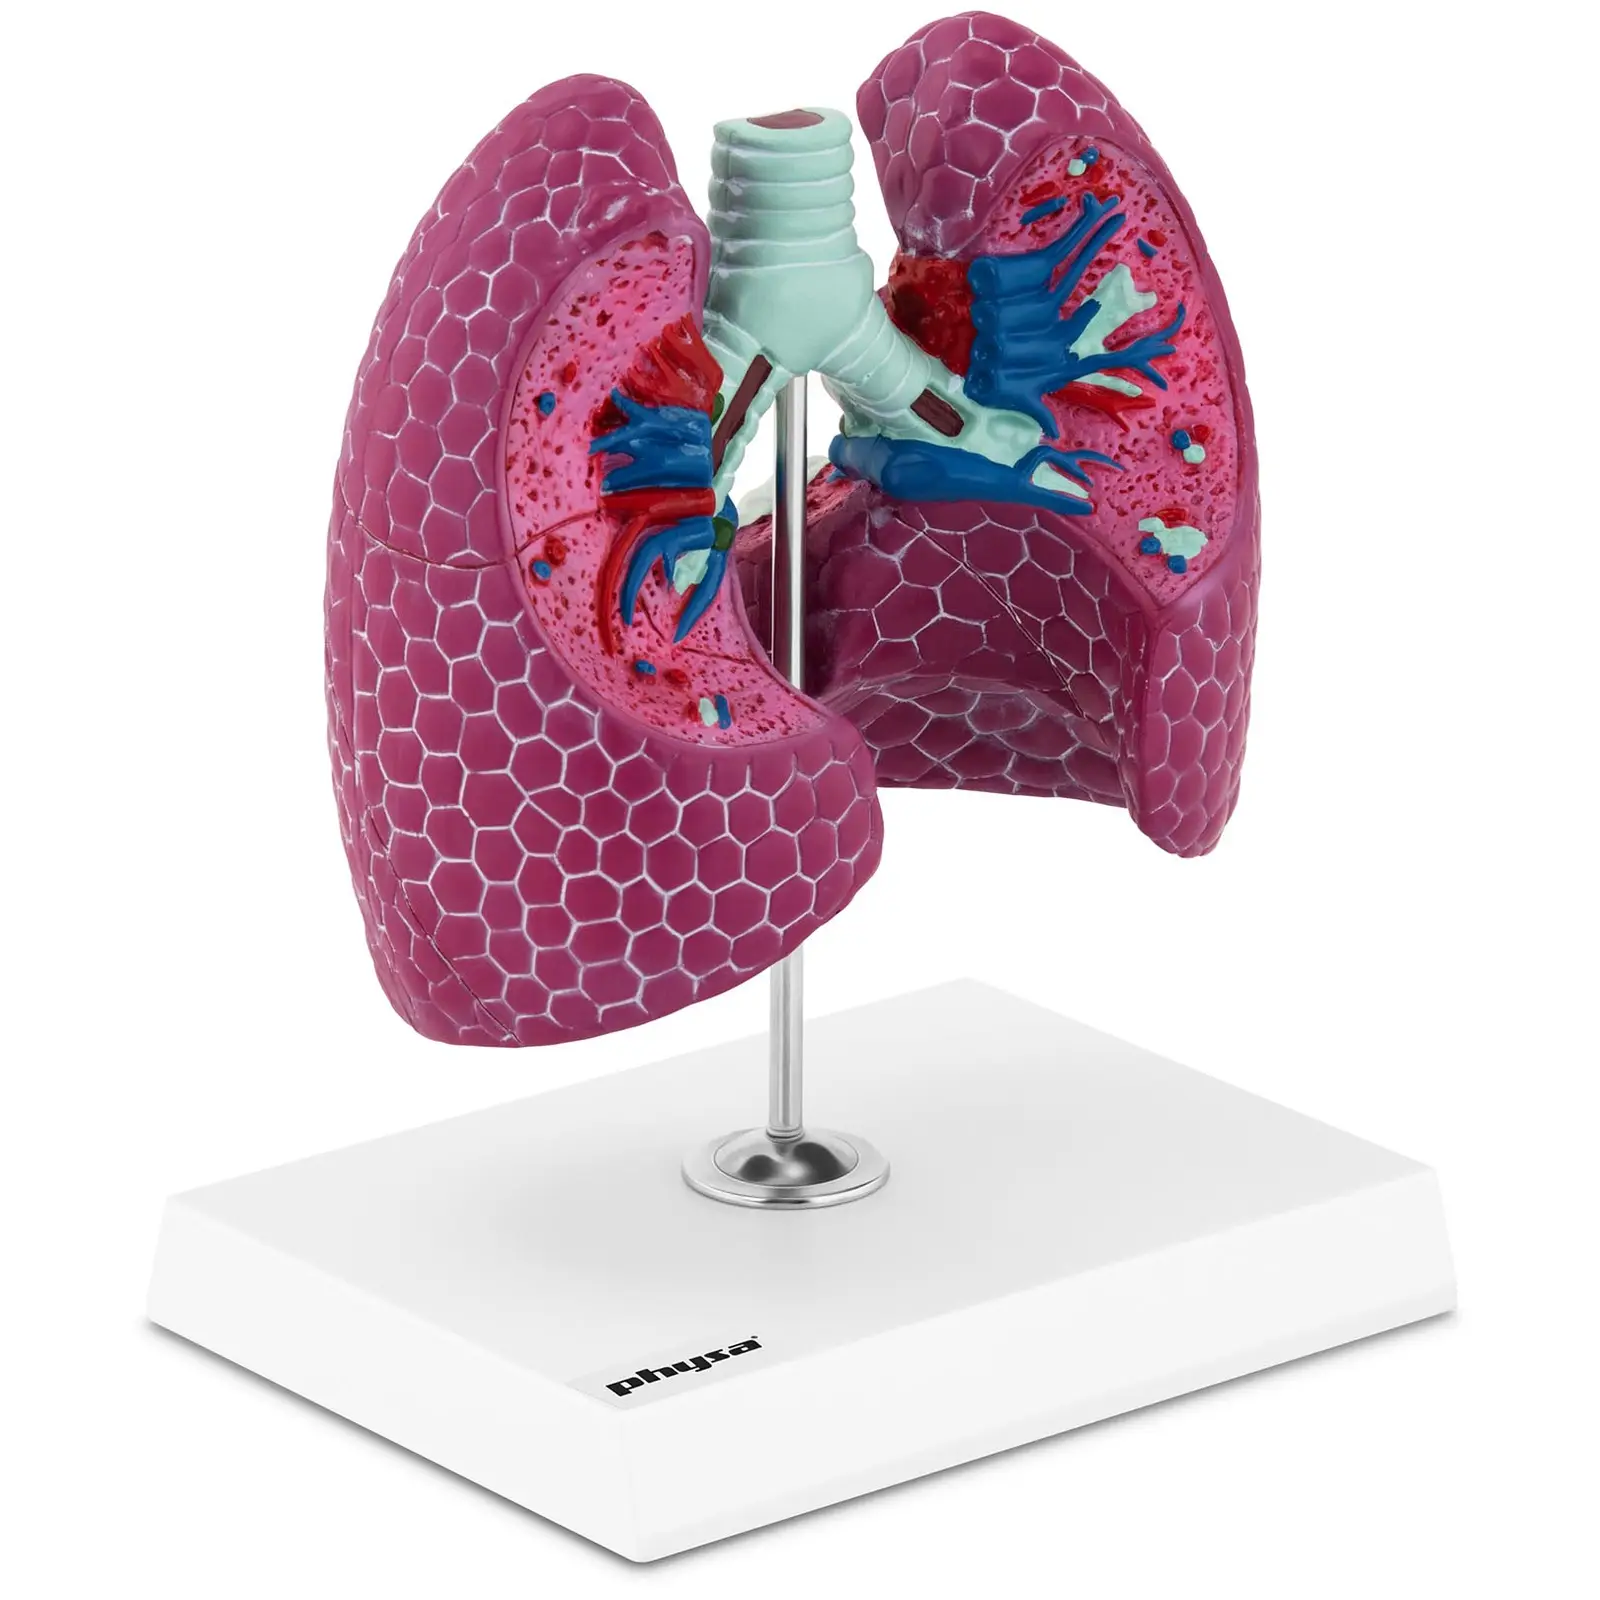 Modelo anatómico pulmonar - con patologías